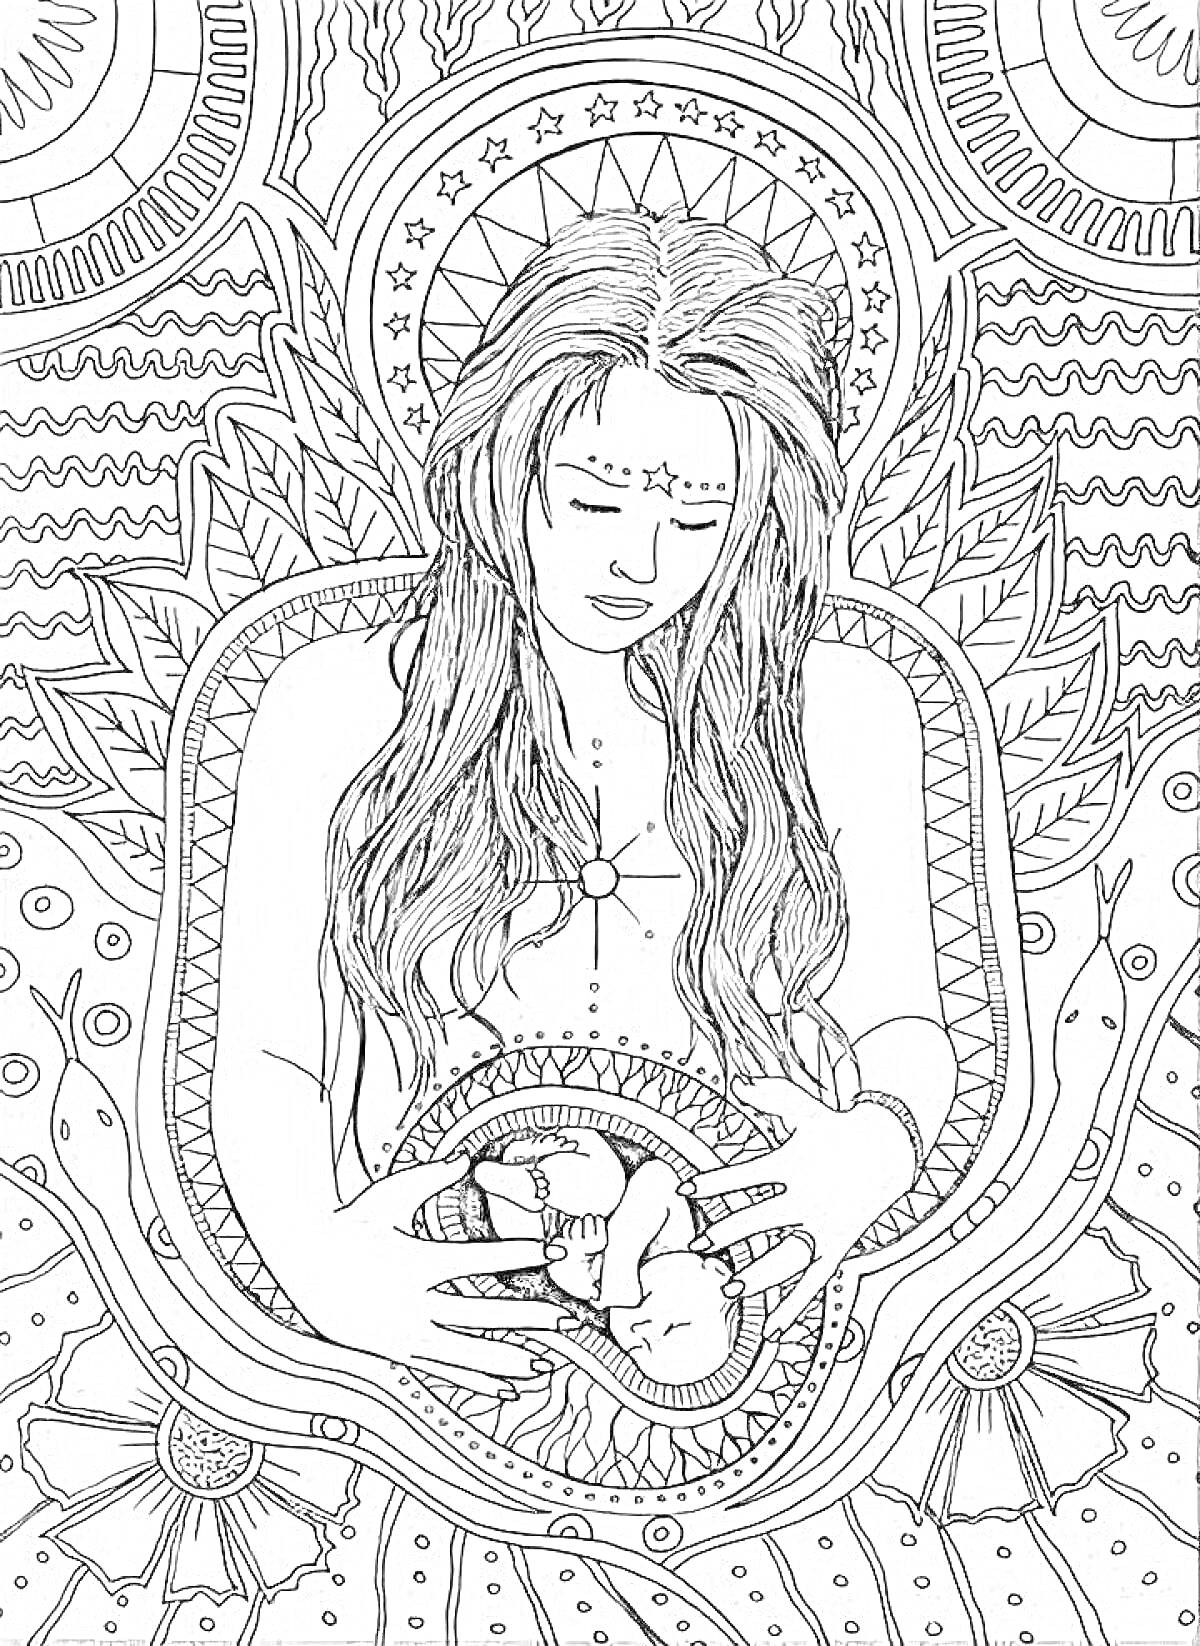 Женщина с длинными волосами, держащая живот с изображением беременного младенца, окруженного абстрактными узорами и звездами